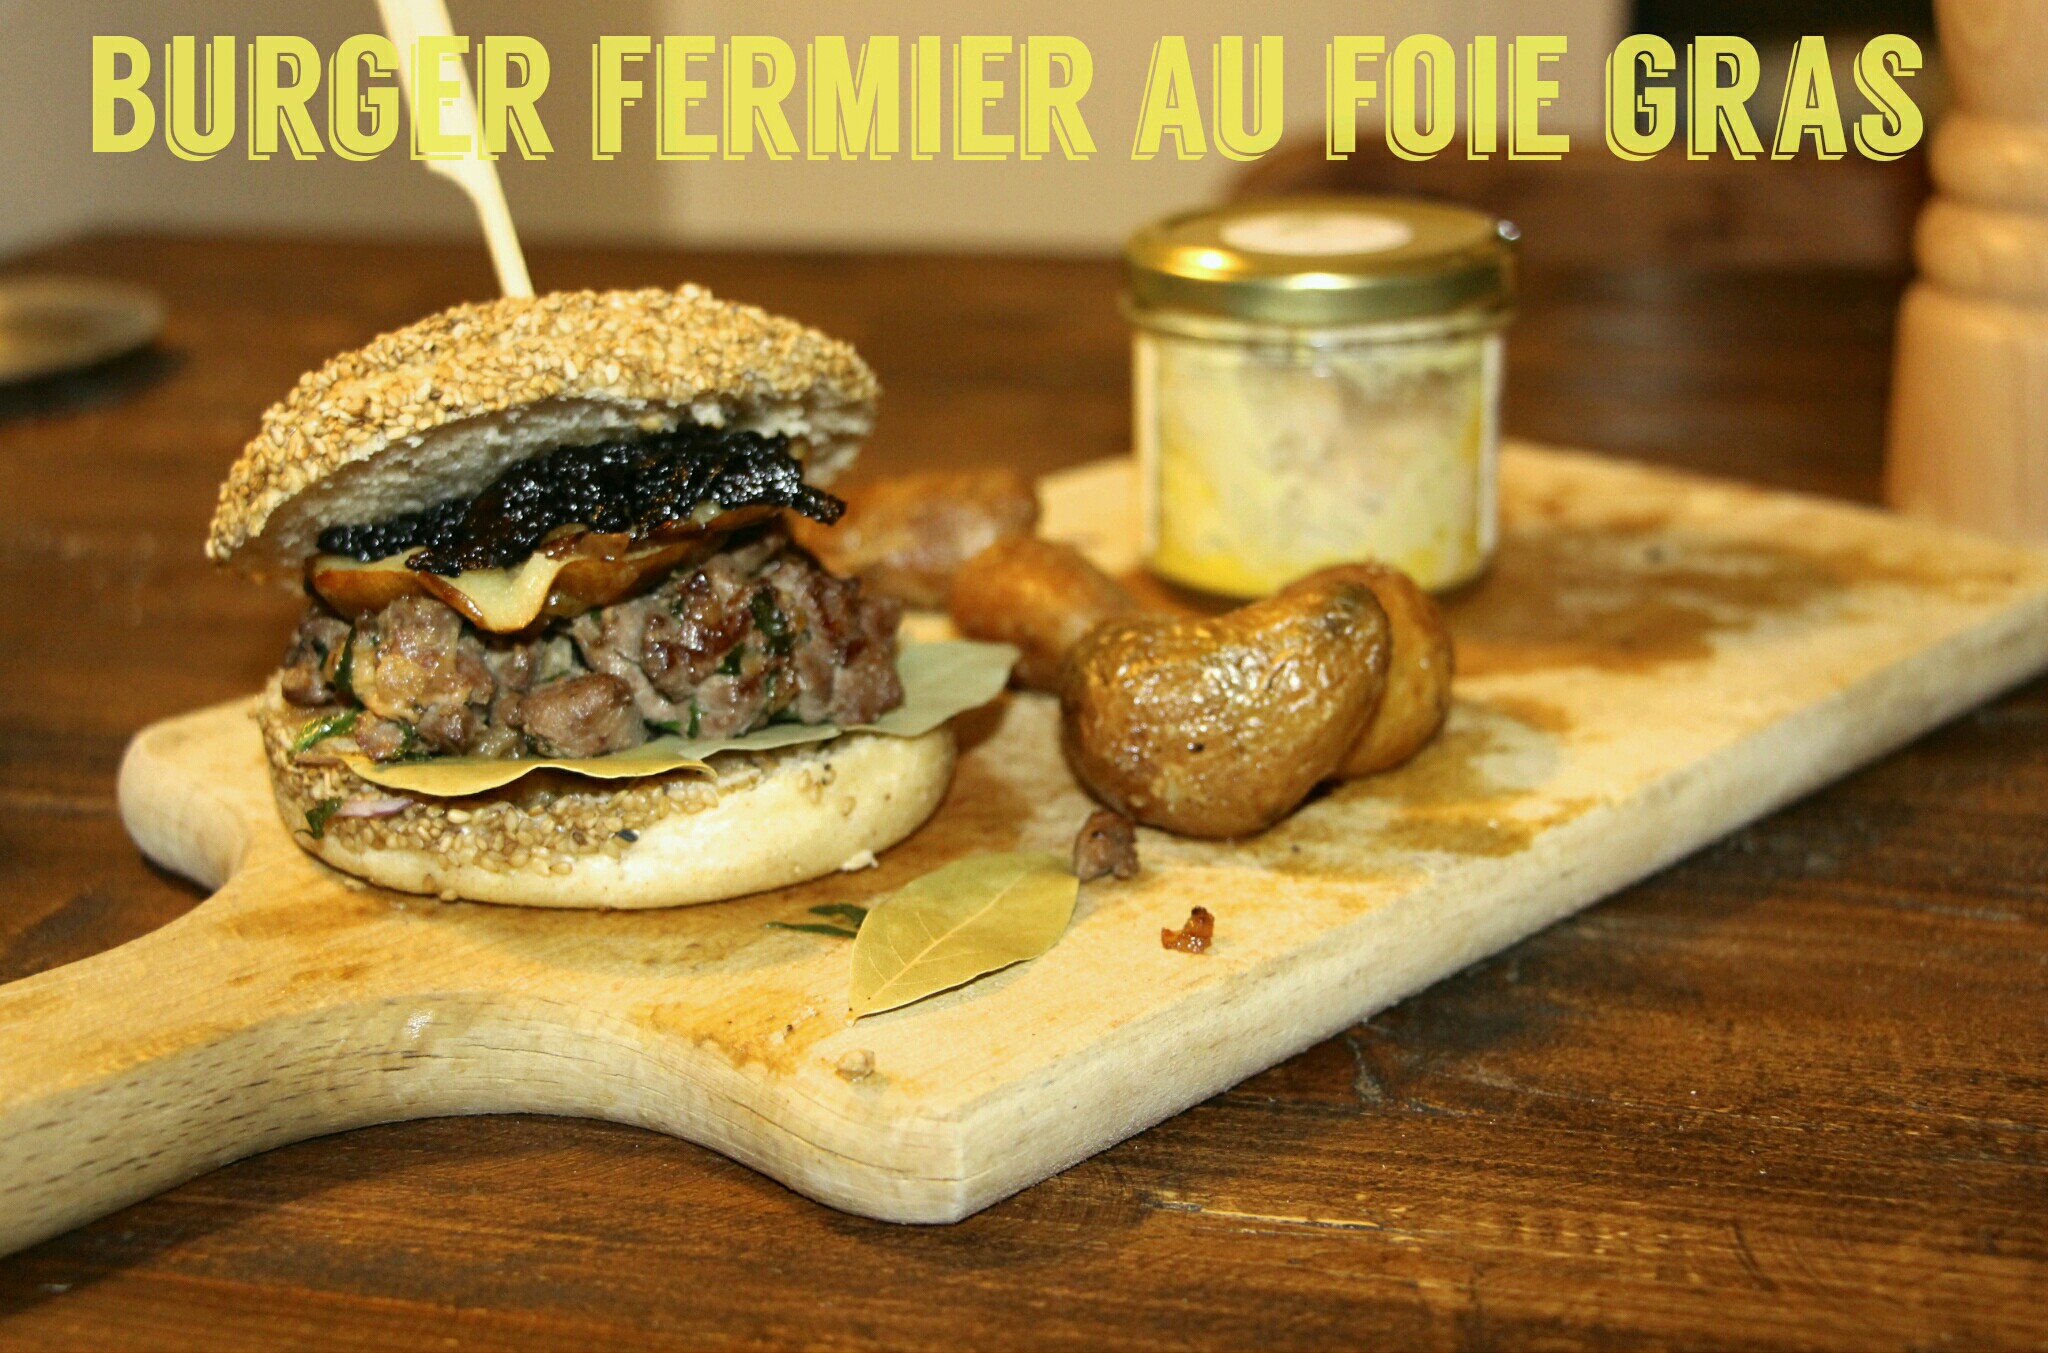 burger-fermier-foie-gras-chicon-choc-blog-de-bonnes-adresses-lilloises